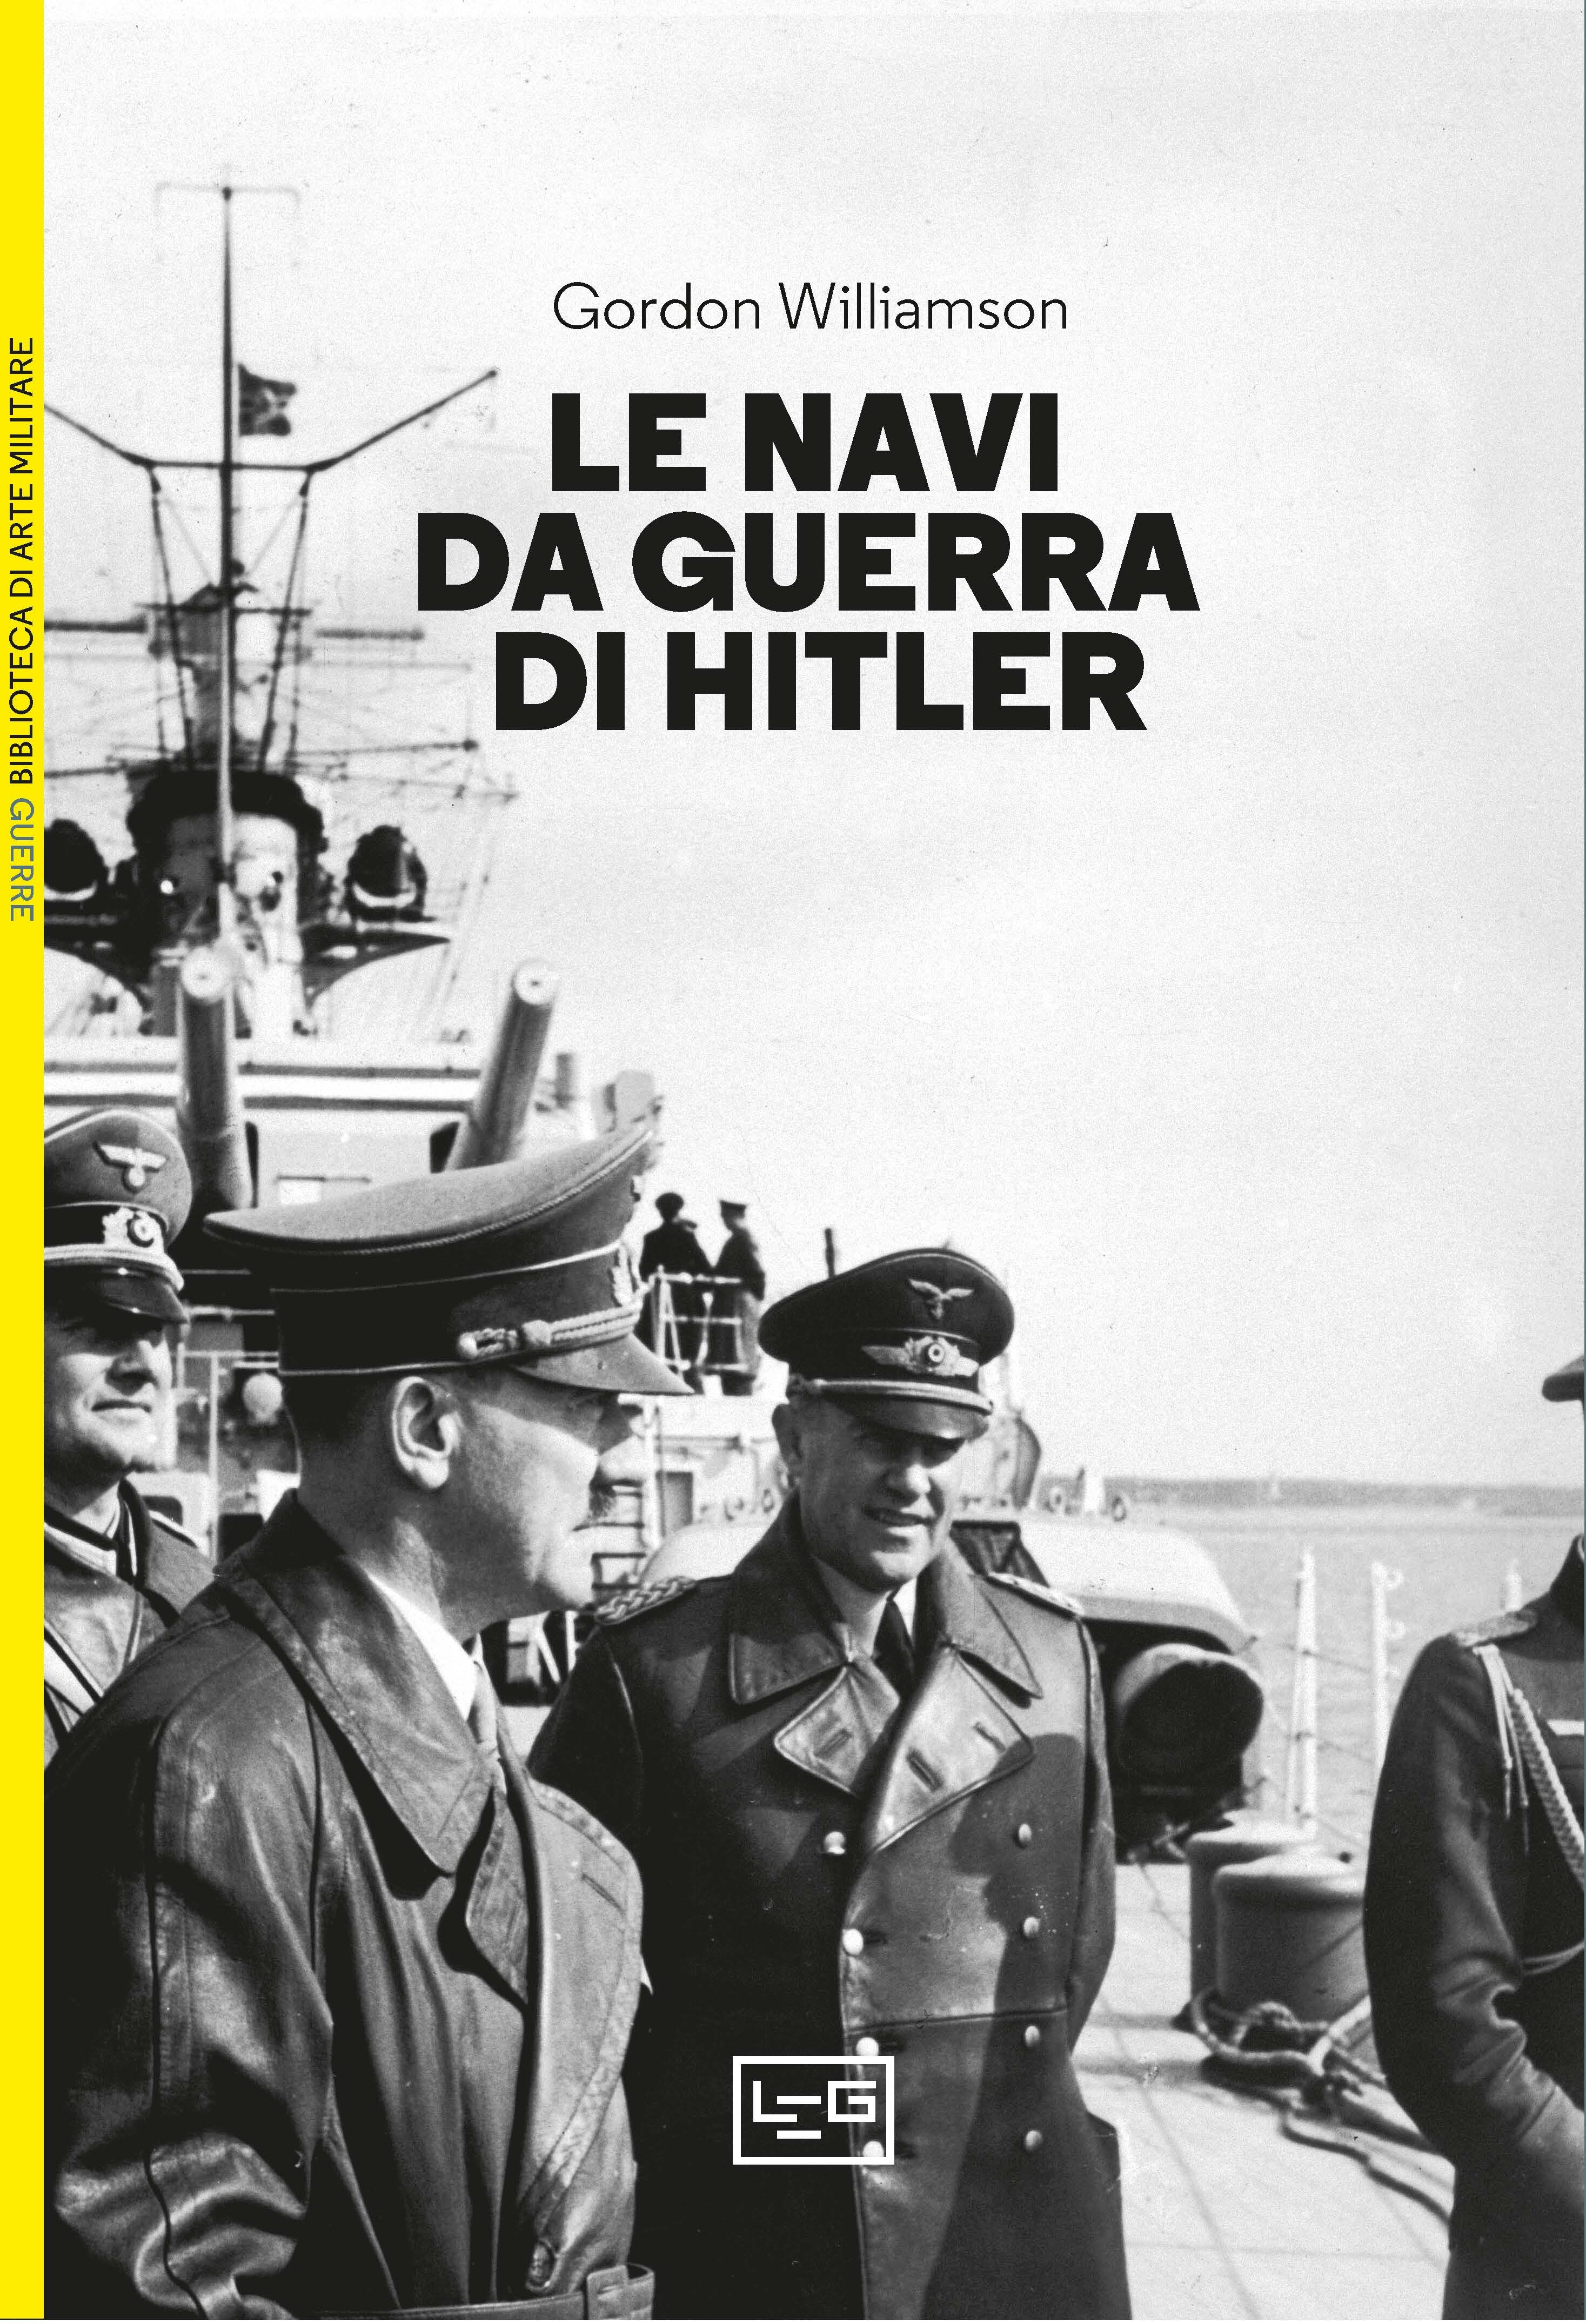 Le navi da guerra di Hitler - Librerie.coop